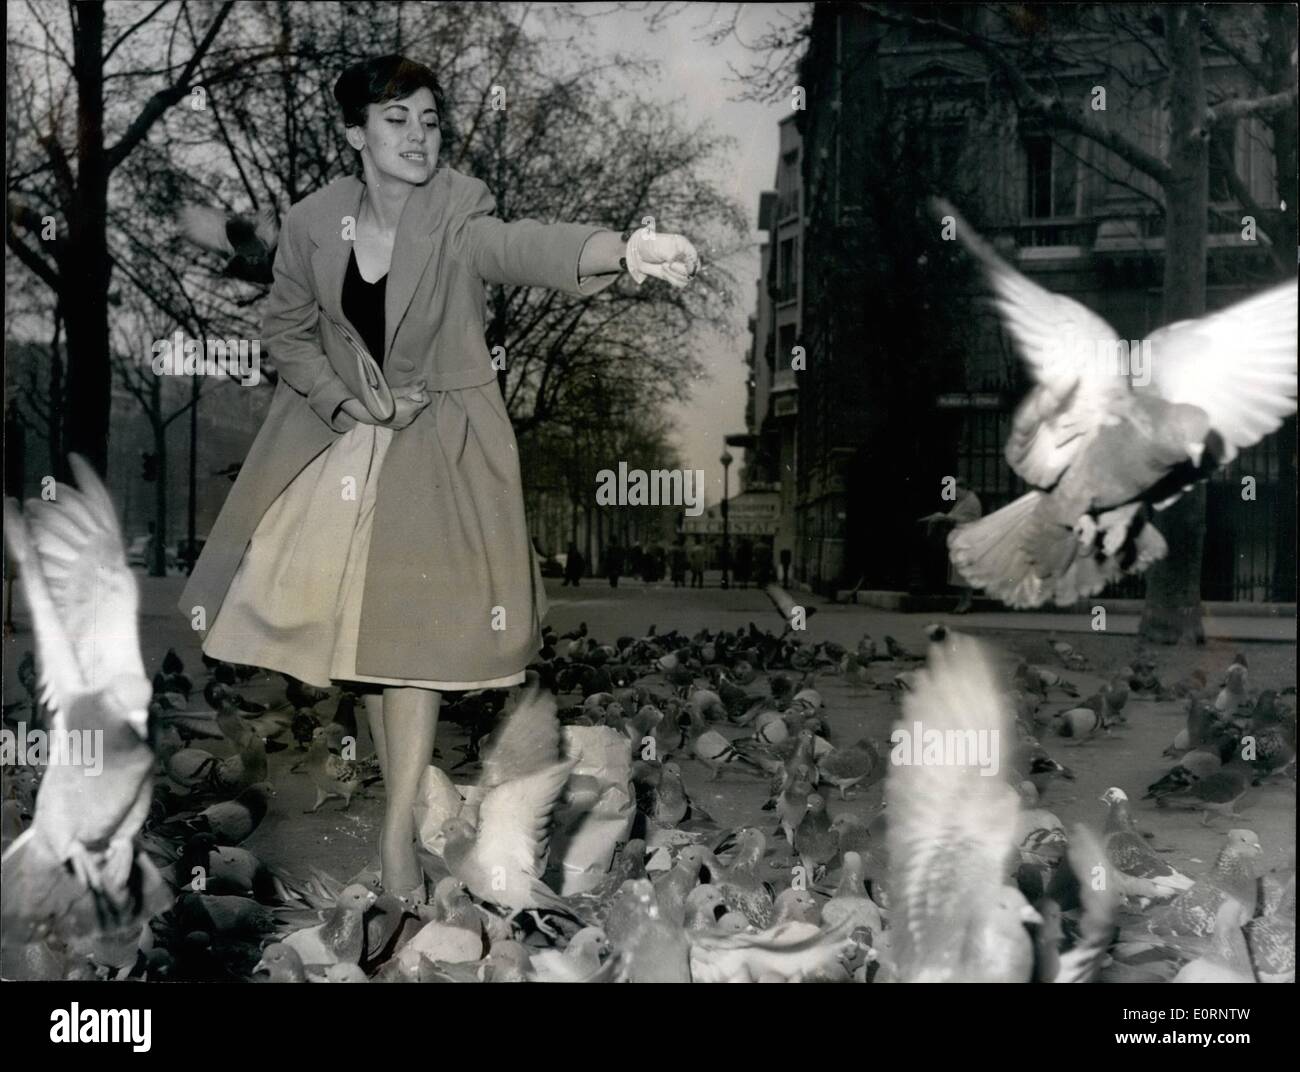 Febbraio 02, 1960 - film bulgaro attrice a Parigi per la premiere del suo film: Sasha Khroucharska, il giovane bulgaro, attrice cinematografica, è ora a Parigi dove lei parteciperà alla premiere del suo film ''Le stelle'' che ha ricevuto un premio speciale della giuria al festival di Cannes nel 1958. Sasha Khroucharska impersona nel film della giovane ragazza Ebrea ( una sorta di Ann bulgaro Frank) destinato a morire in una morte tedesco camp. Mostra fotografica di Sasha Krucharska raffigurata con piccioni vicino a place de l'Etoile, Parigi questa mattina. Foto Stock